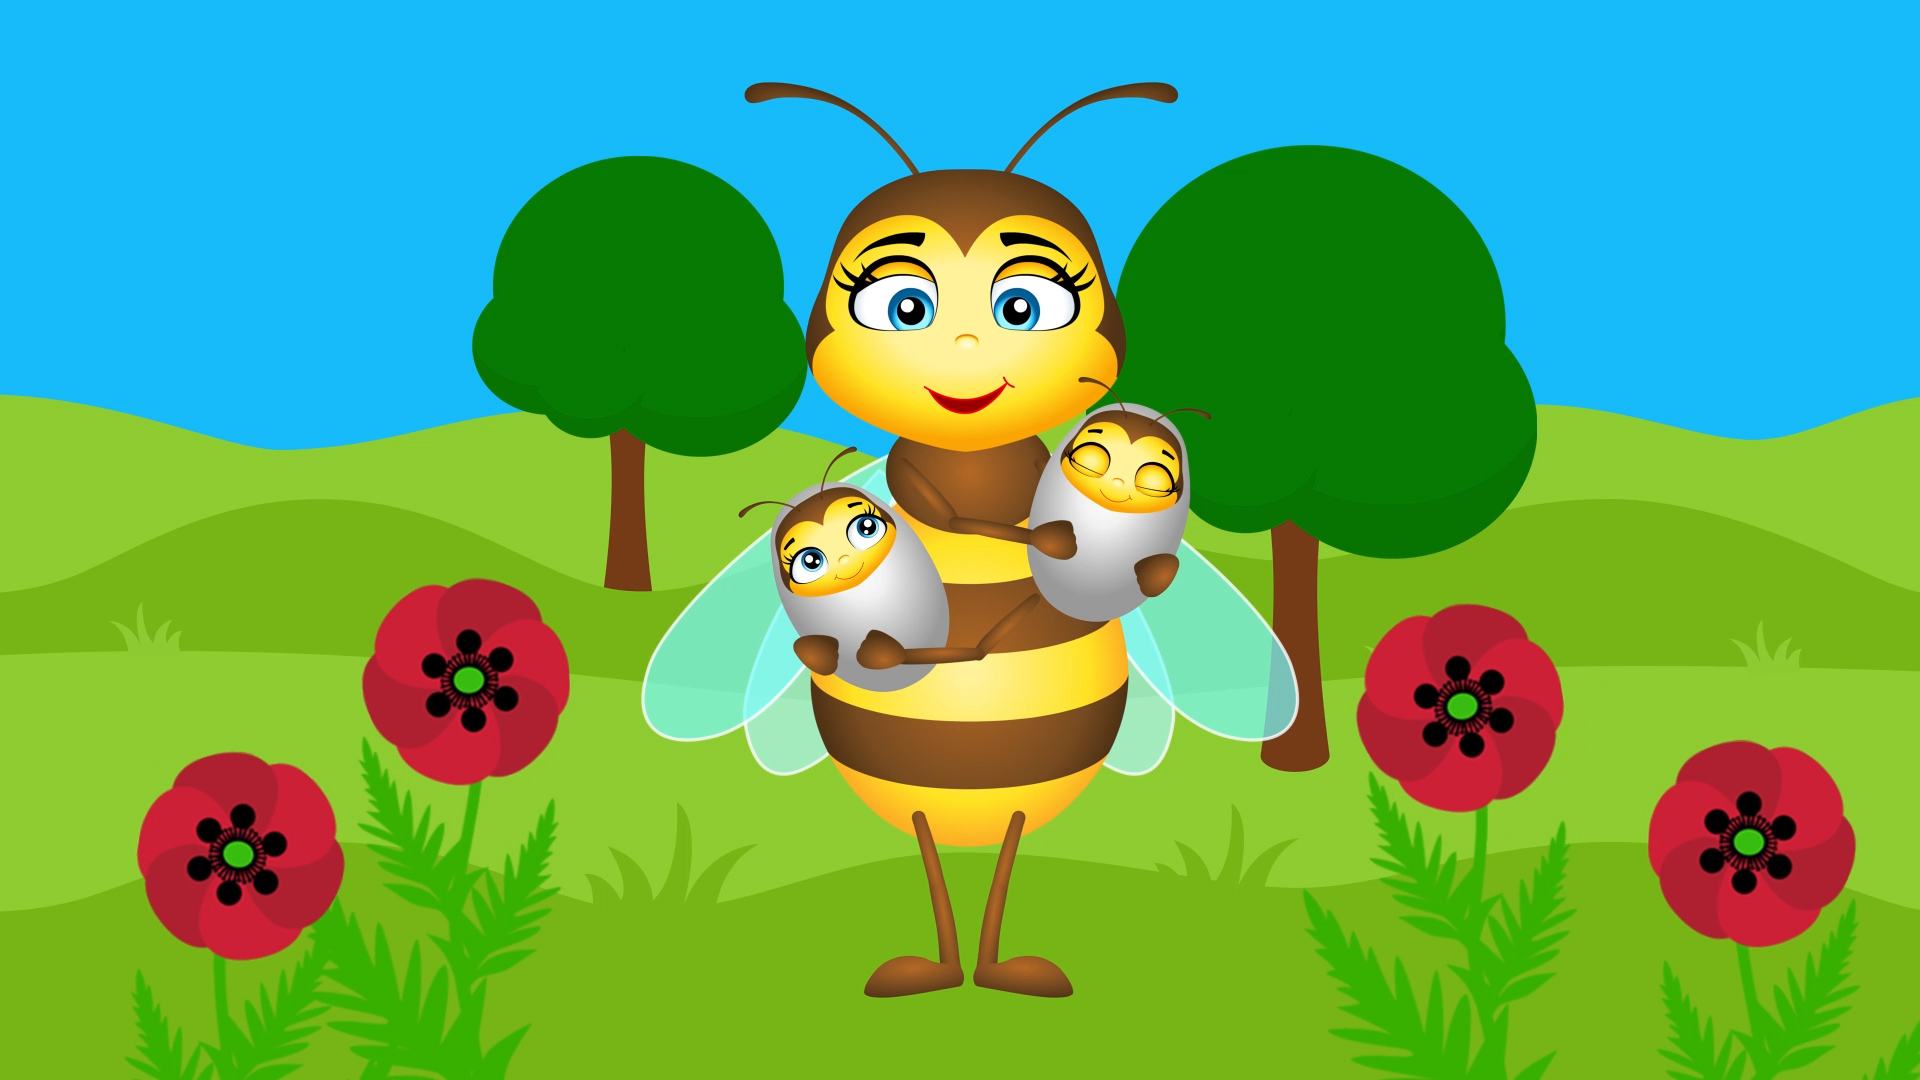 pszczola_film_edukacyjny